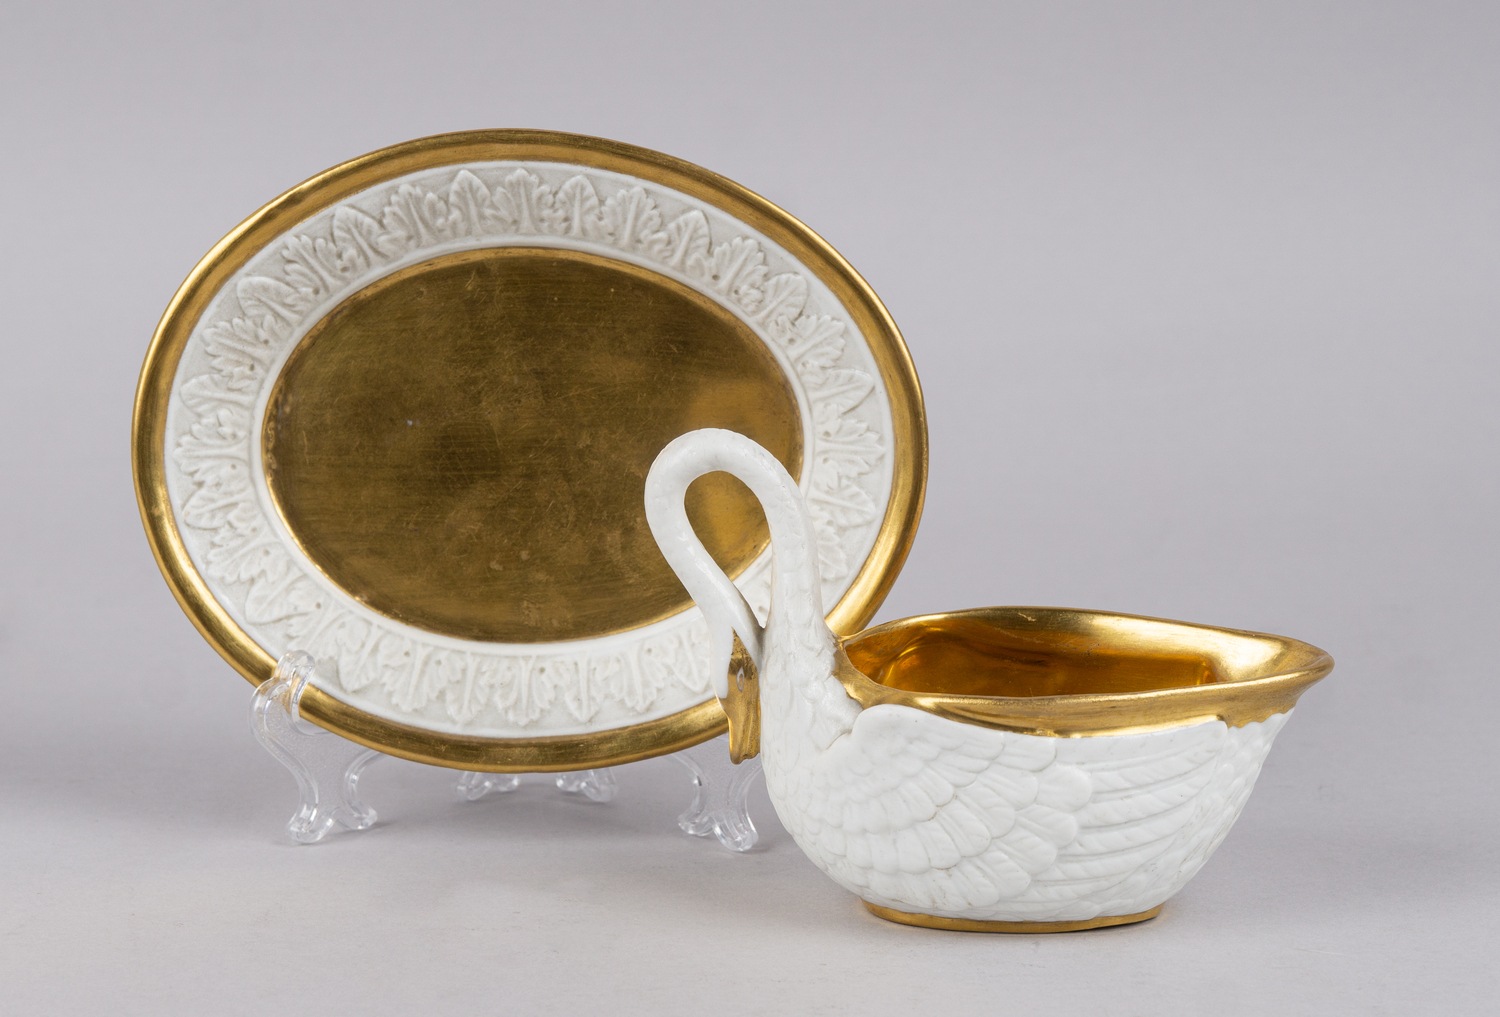 (Севр/Ампир) Чашка в стиле ампир в виде лебедя с блюдцем.<br>Франция, Севрская фарфоровая мануфактура, 1810-1814 годы.